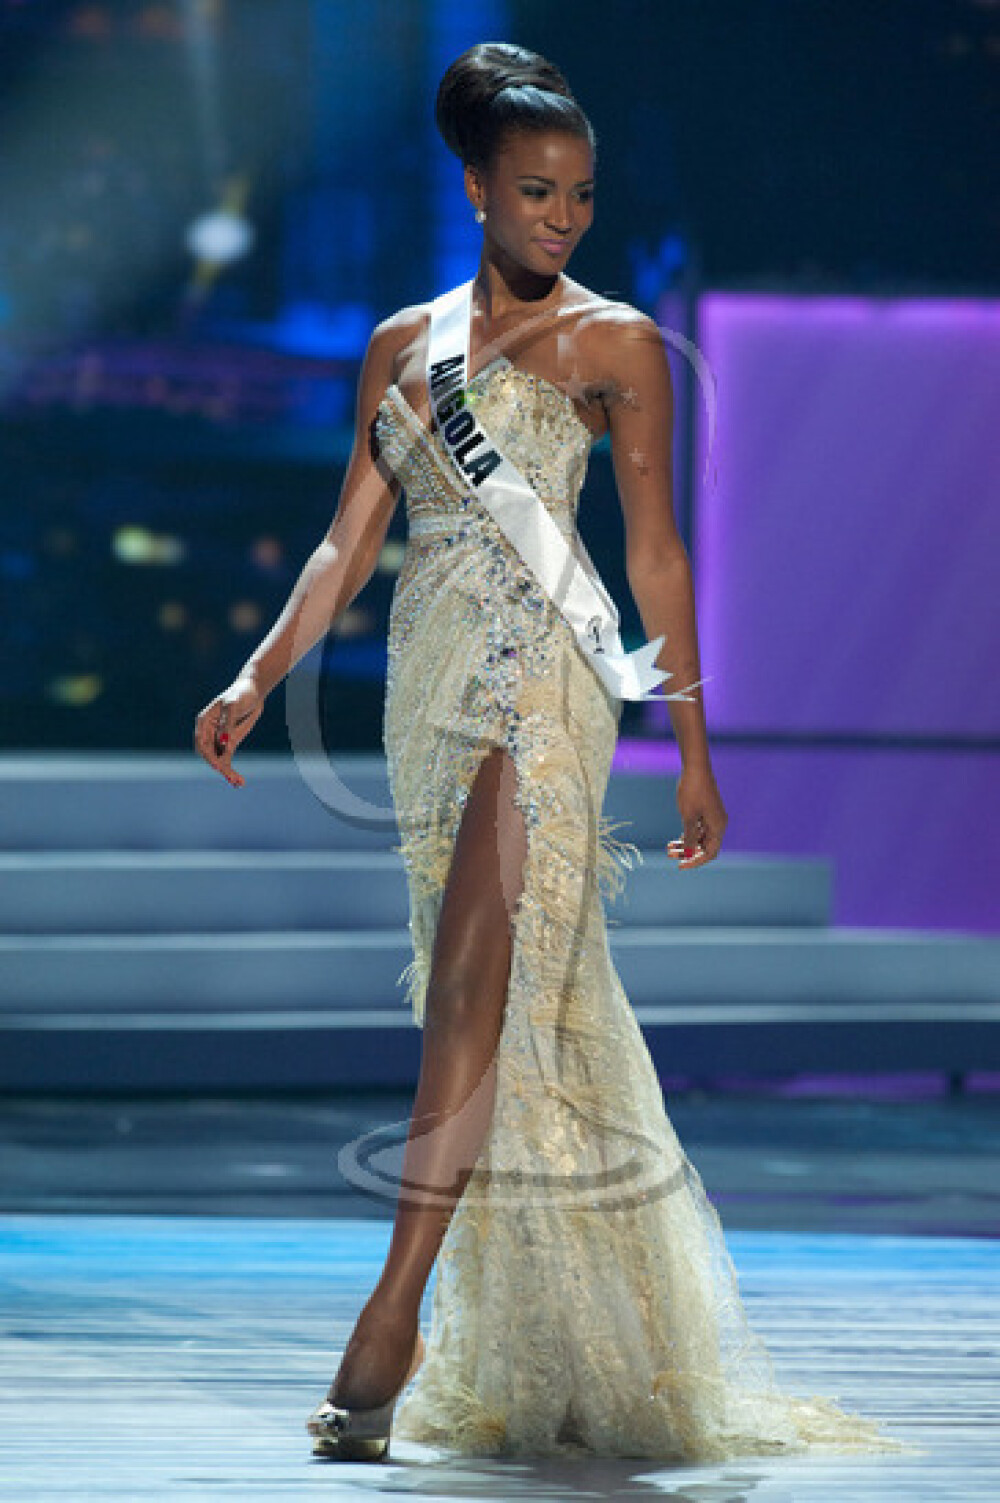 Este sau nu cea mai frumoasa femeie din lume? Acuzatii grave de frauda la Miss Univers 2011 - Imaginea 3